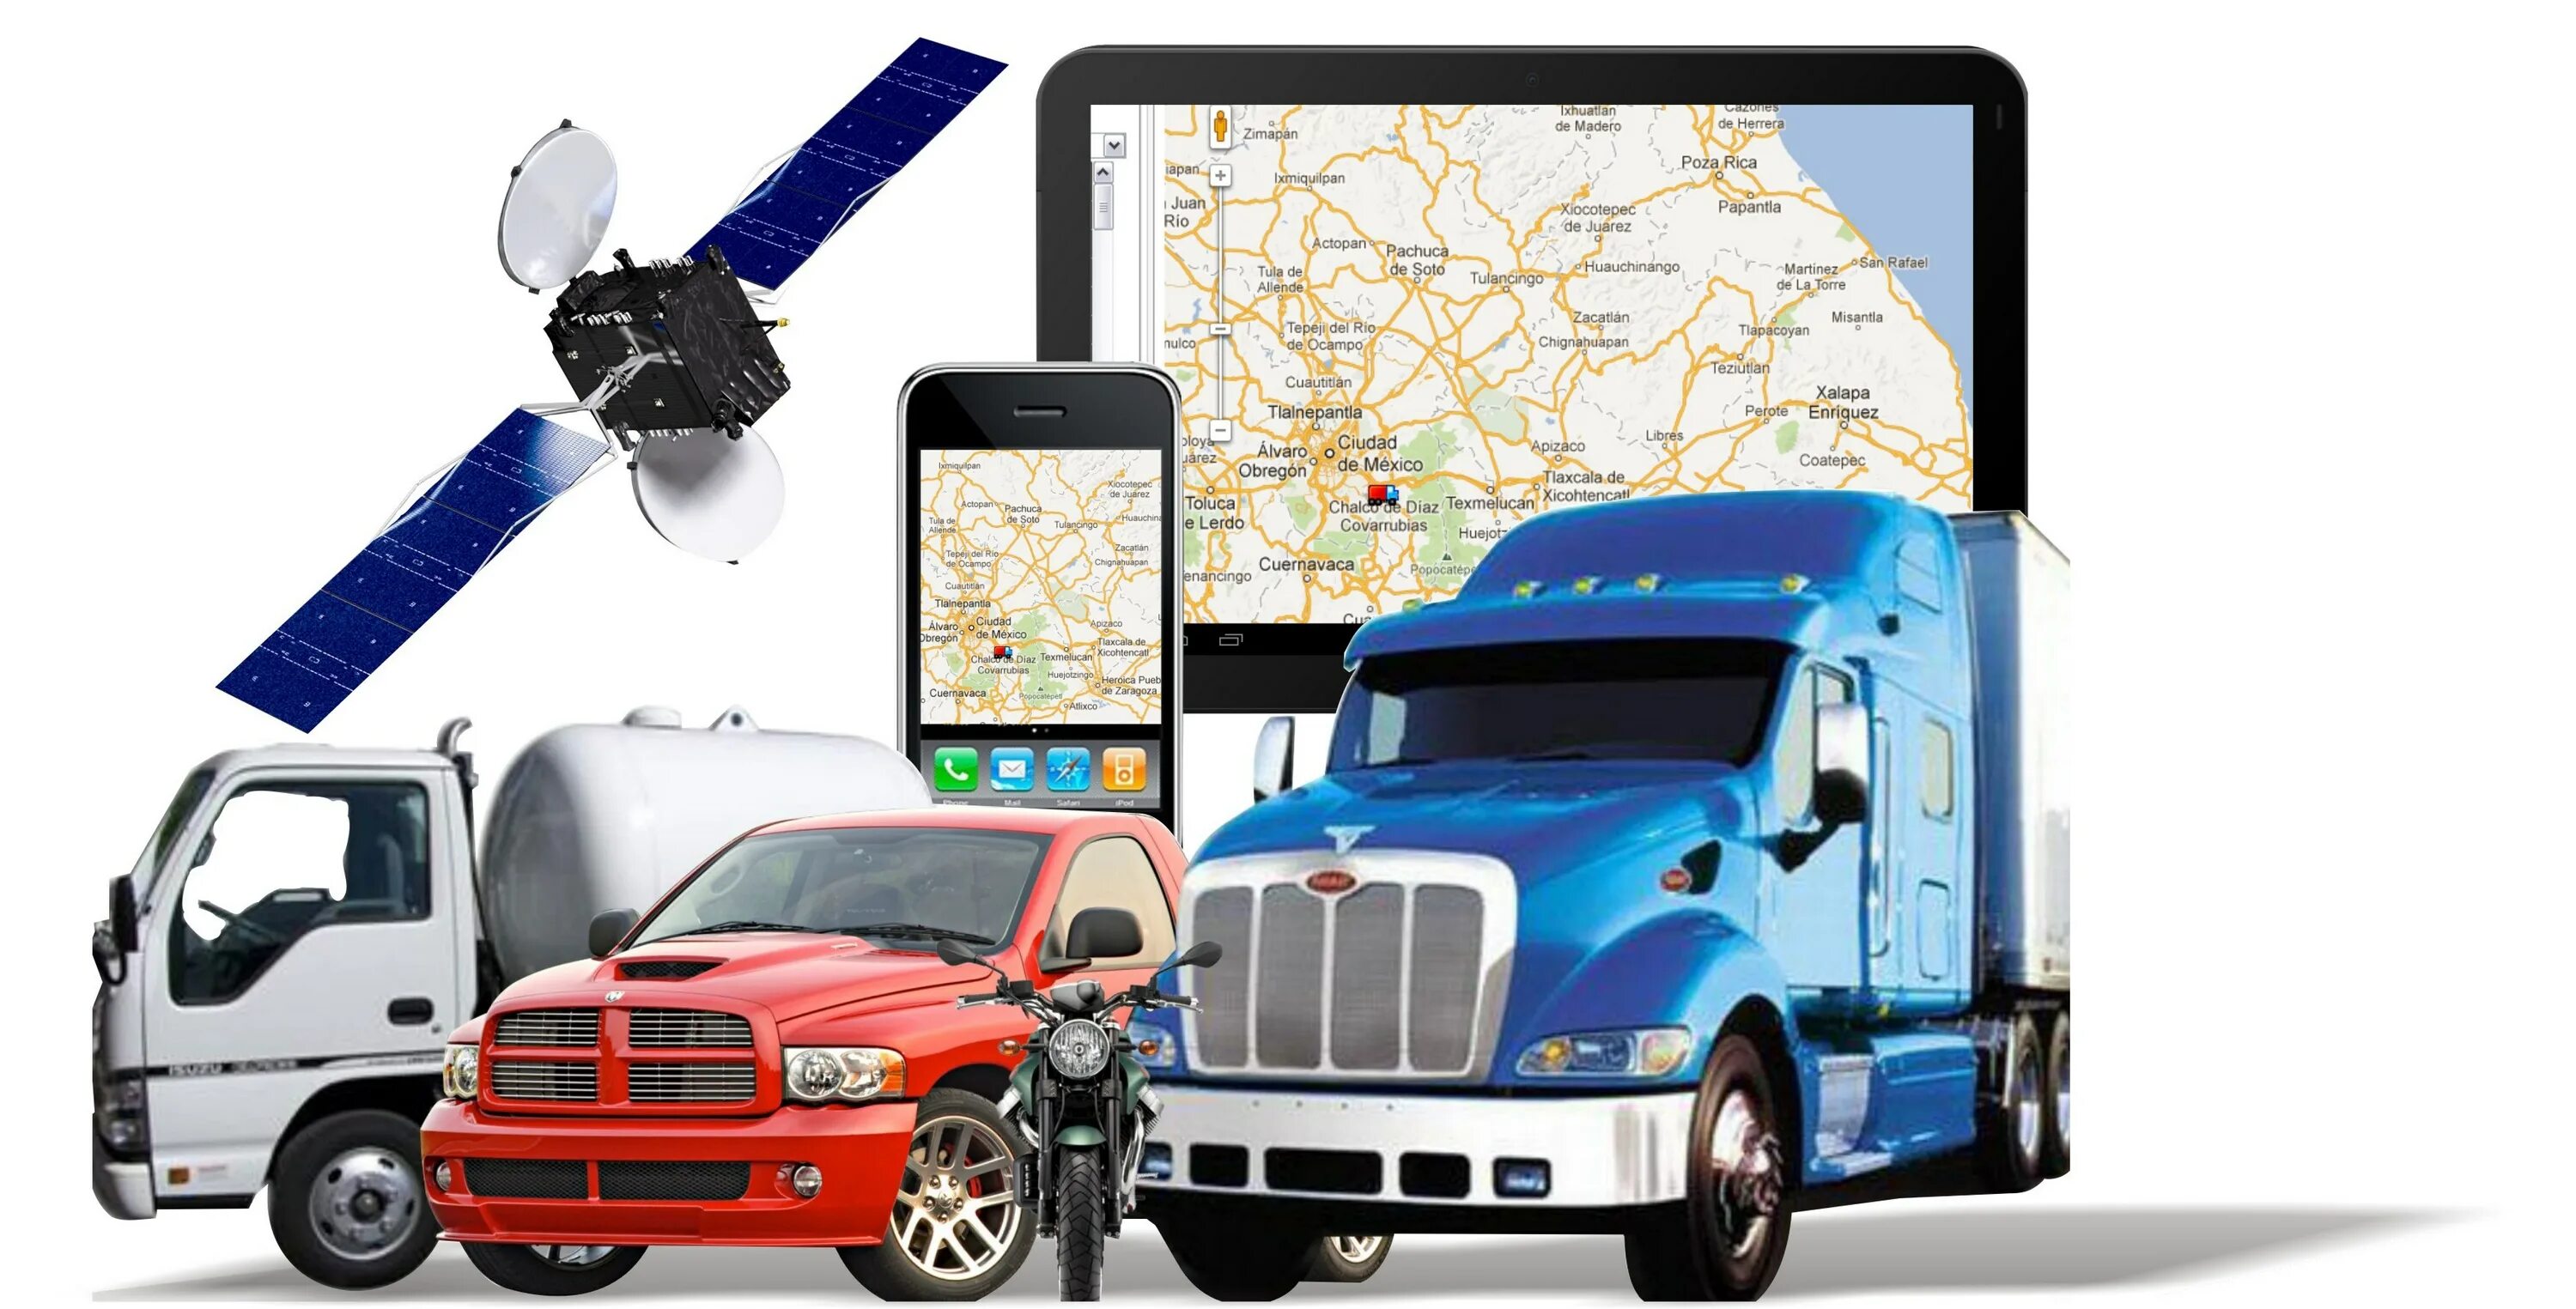 Система контроля топлива и мониторинга транспорта. Спутниковый мониторинг транспорта ГЛОНАСС GPS. Подсистема GPS/ ГЛОНАСС мониторинга. Система GPS контроля транспорта. Навигационная система GPS ГЛОНАСС Валиот.